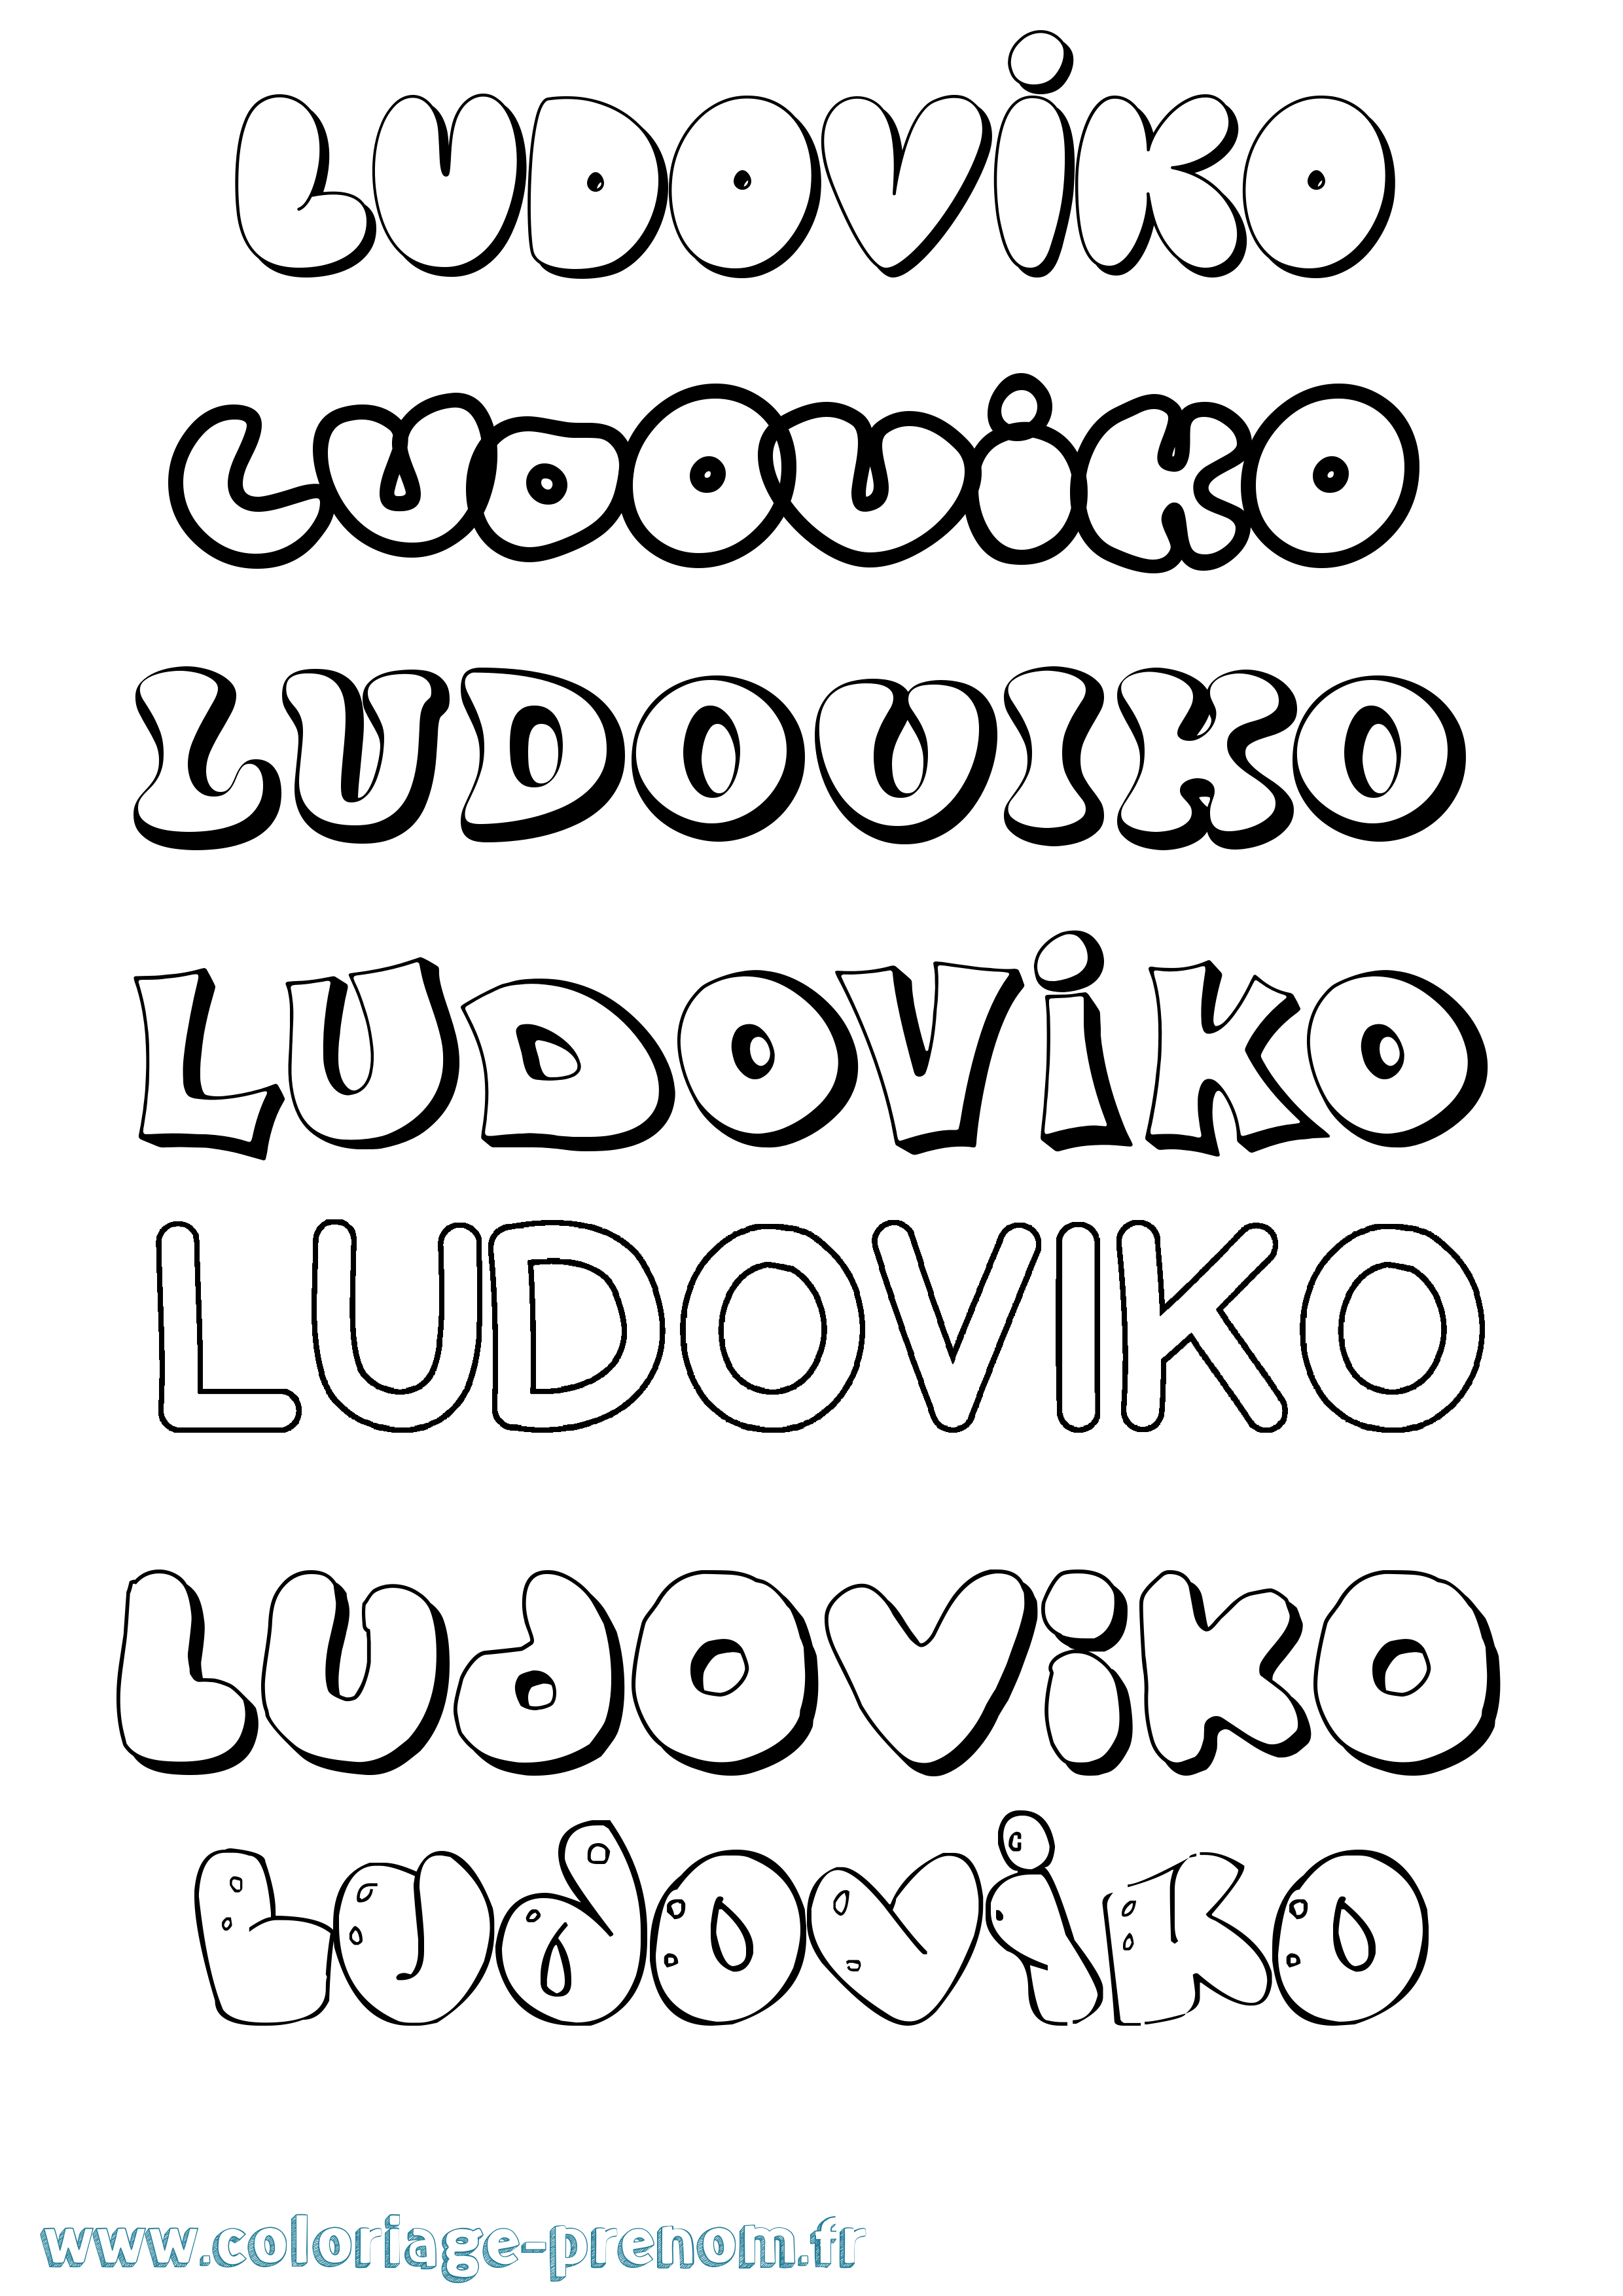 Coloriage prénom Ludoviko Bubble